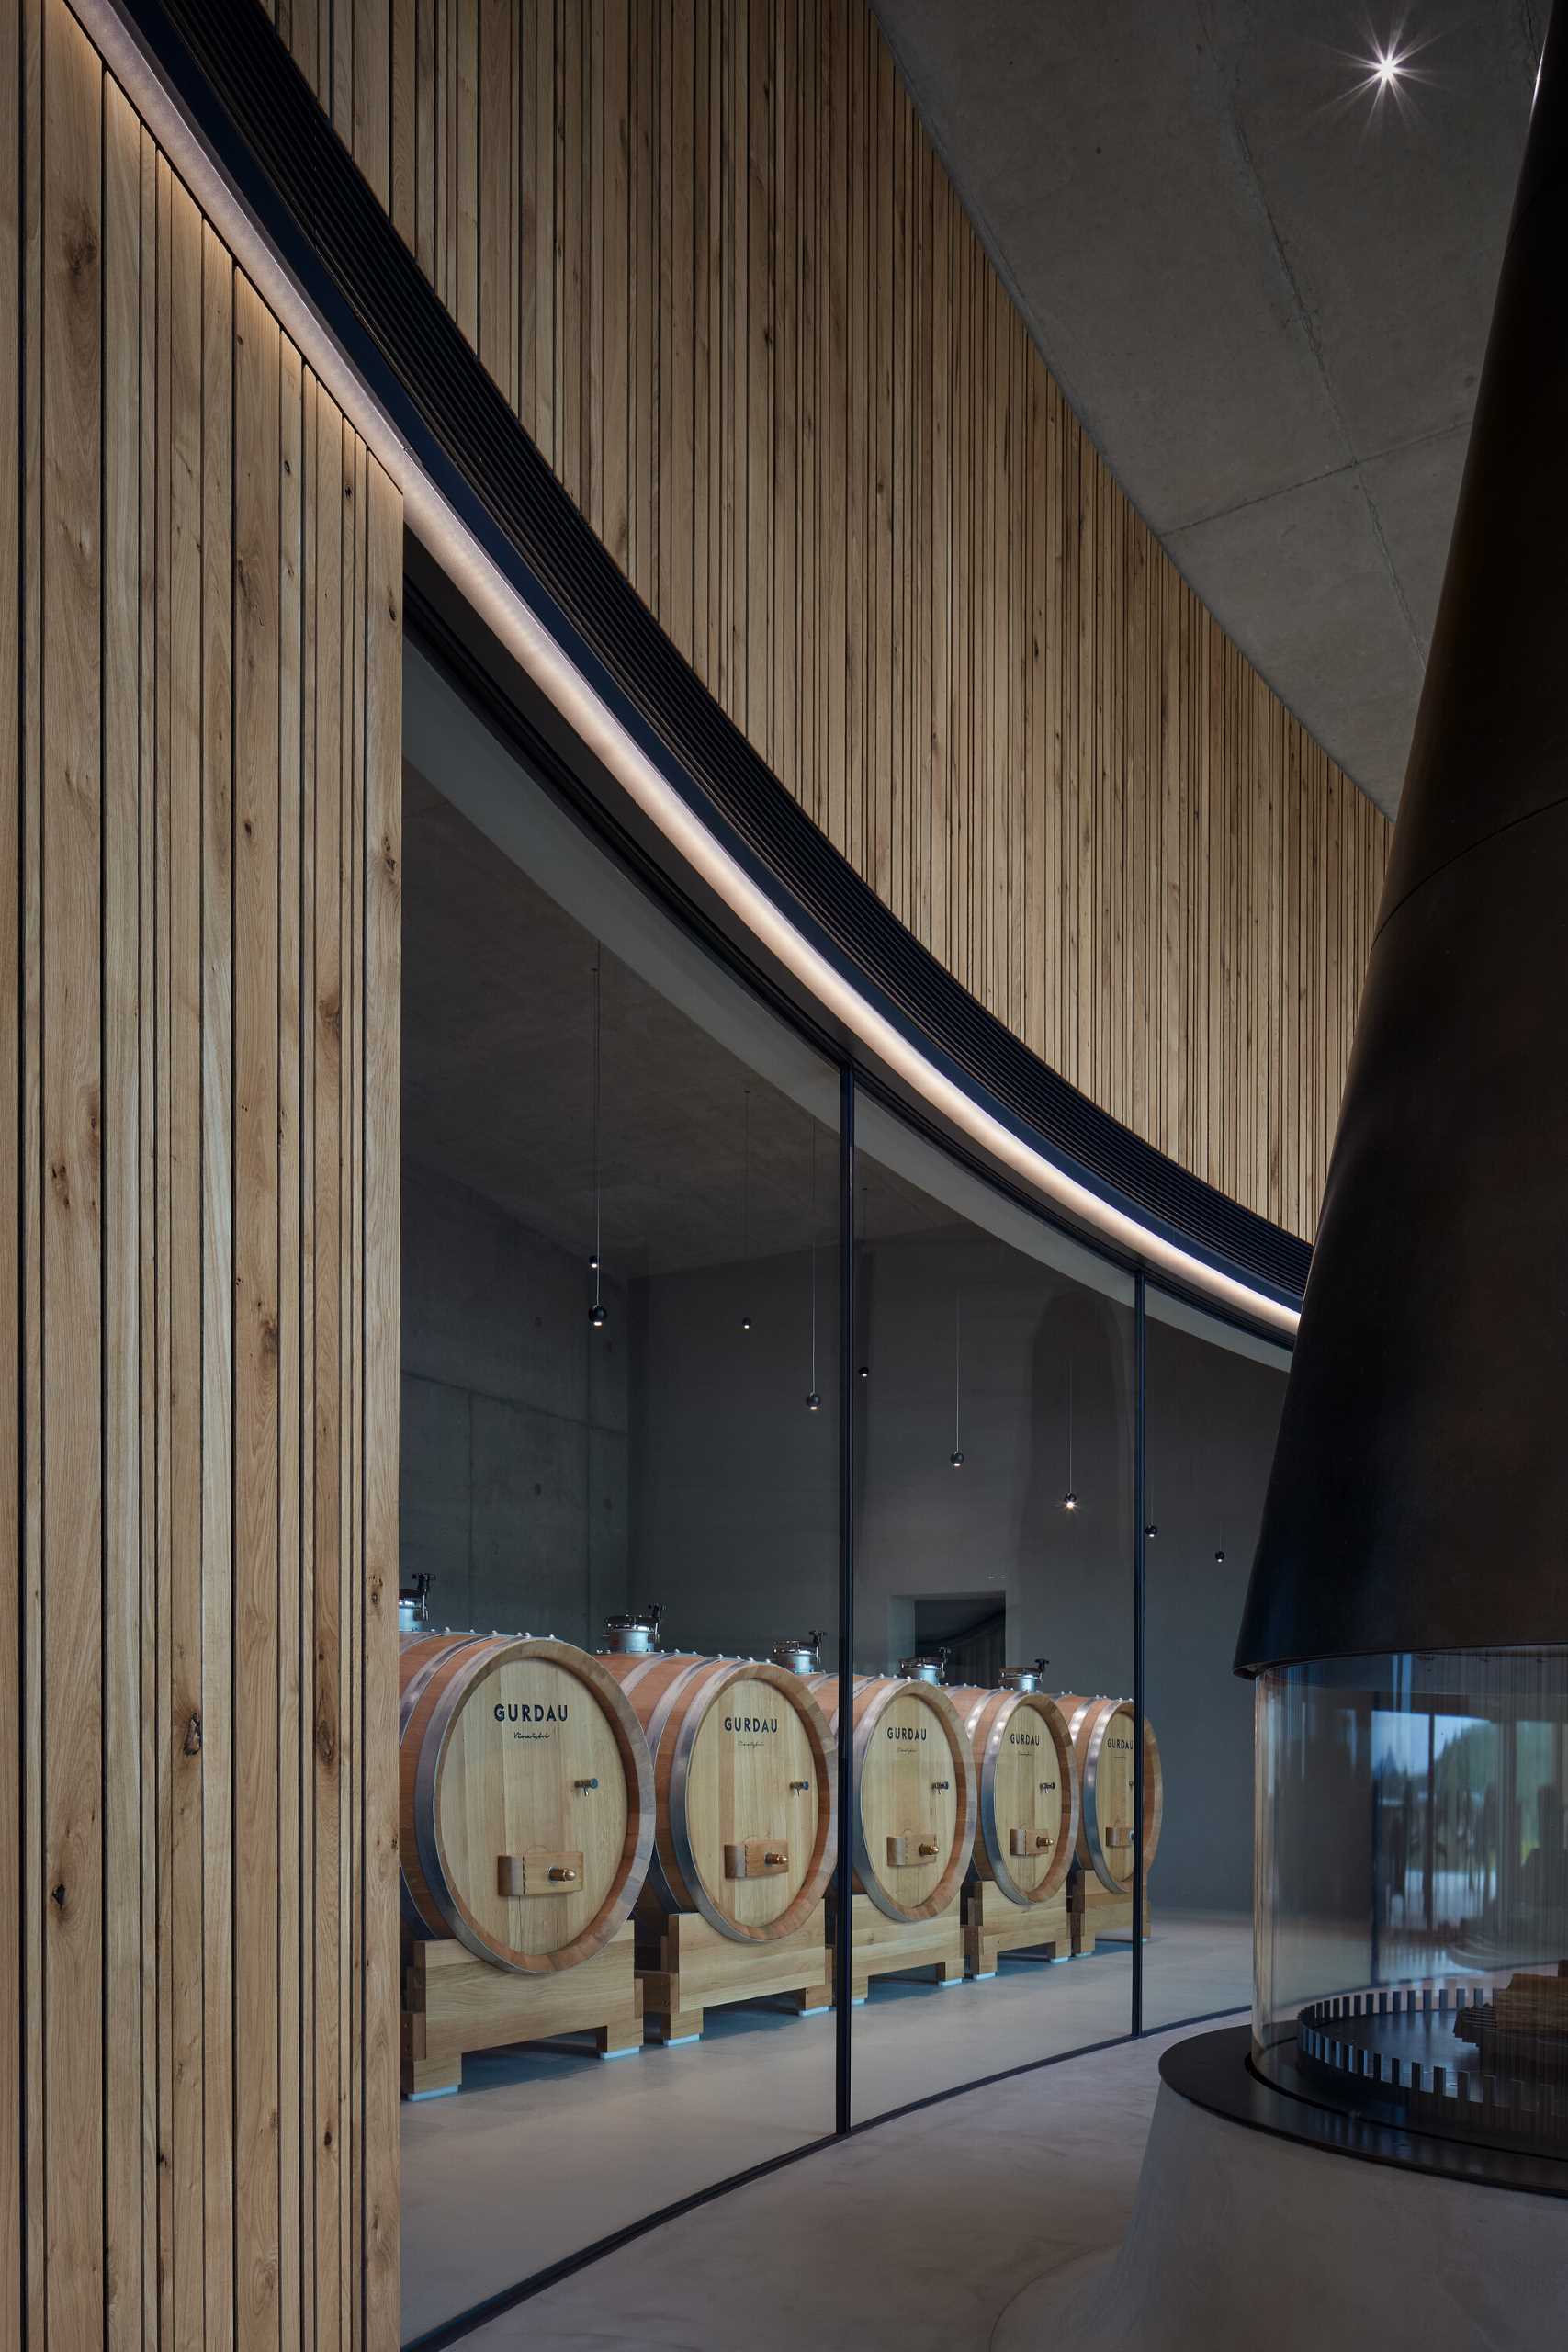 مجموعه‌ای از بشکه‌های شراب در پشت یک دیوار شیشه‌ای منحنی قرار گرفته‌اند و به بازدیدکنندگان نگاهی اجمالی از فرآیند تولید شراب می‌دهند.